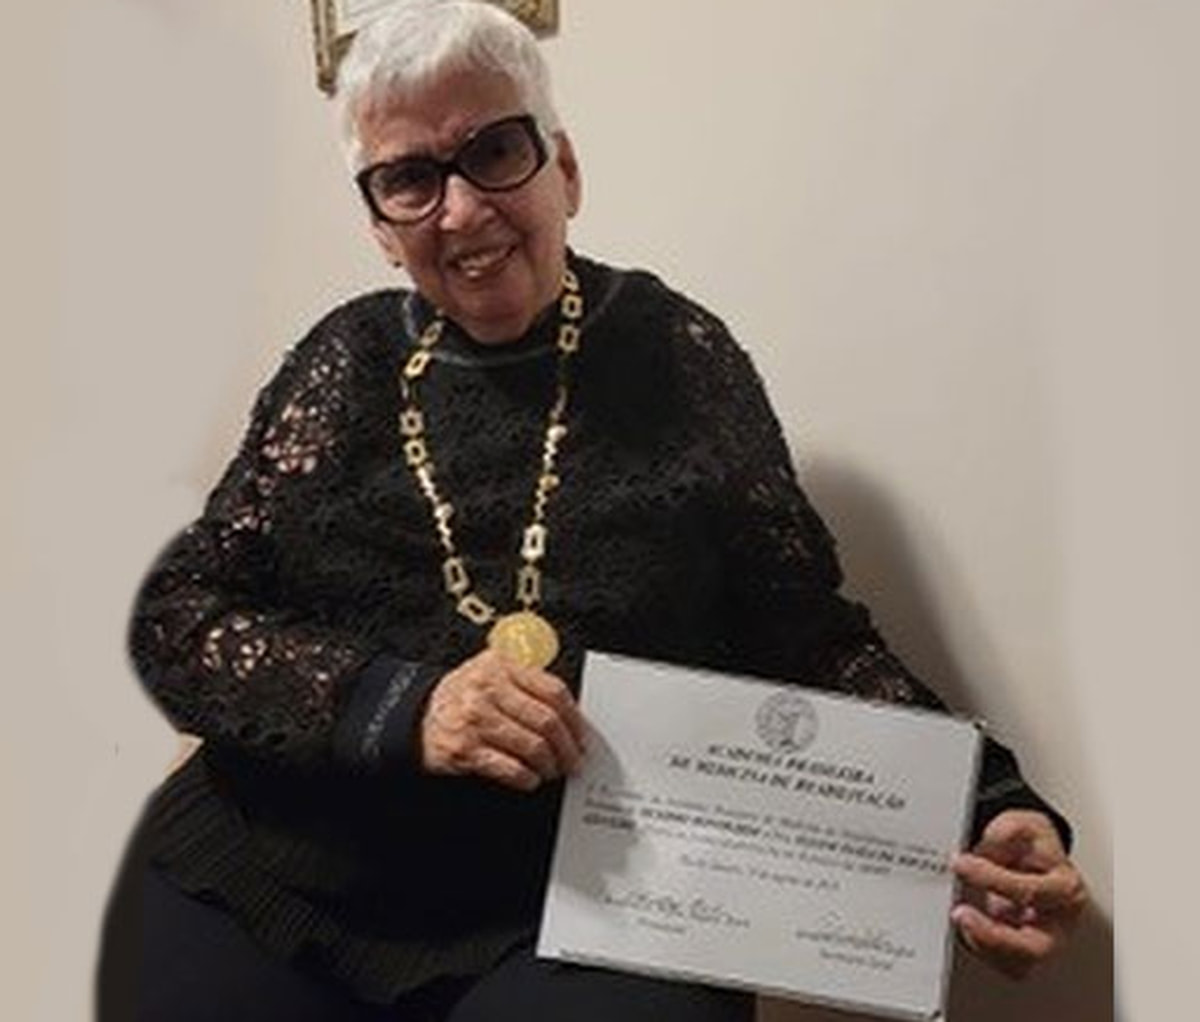 A Profa. Eliane Azevedo recebe o Titulo de Membro Honorário da Academia Brasileira de Medicina de Reabilitação